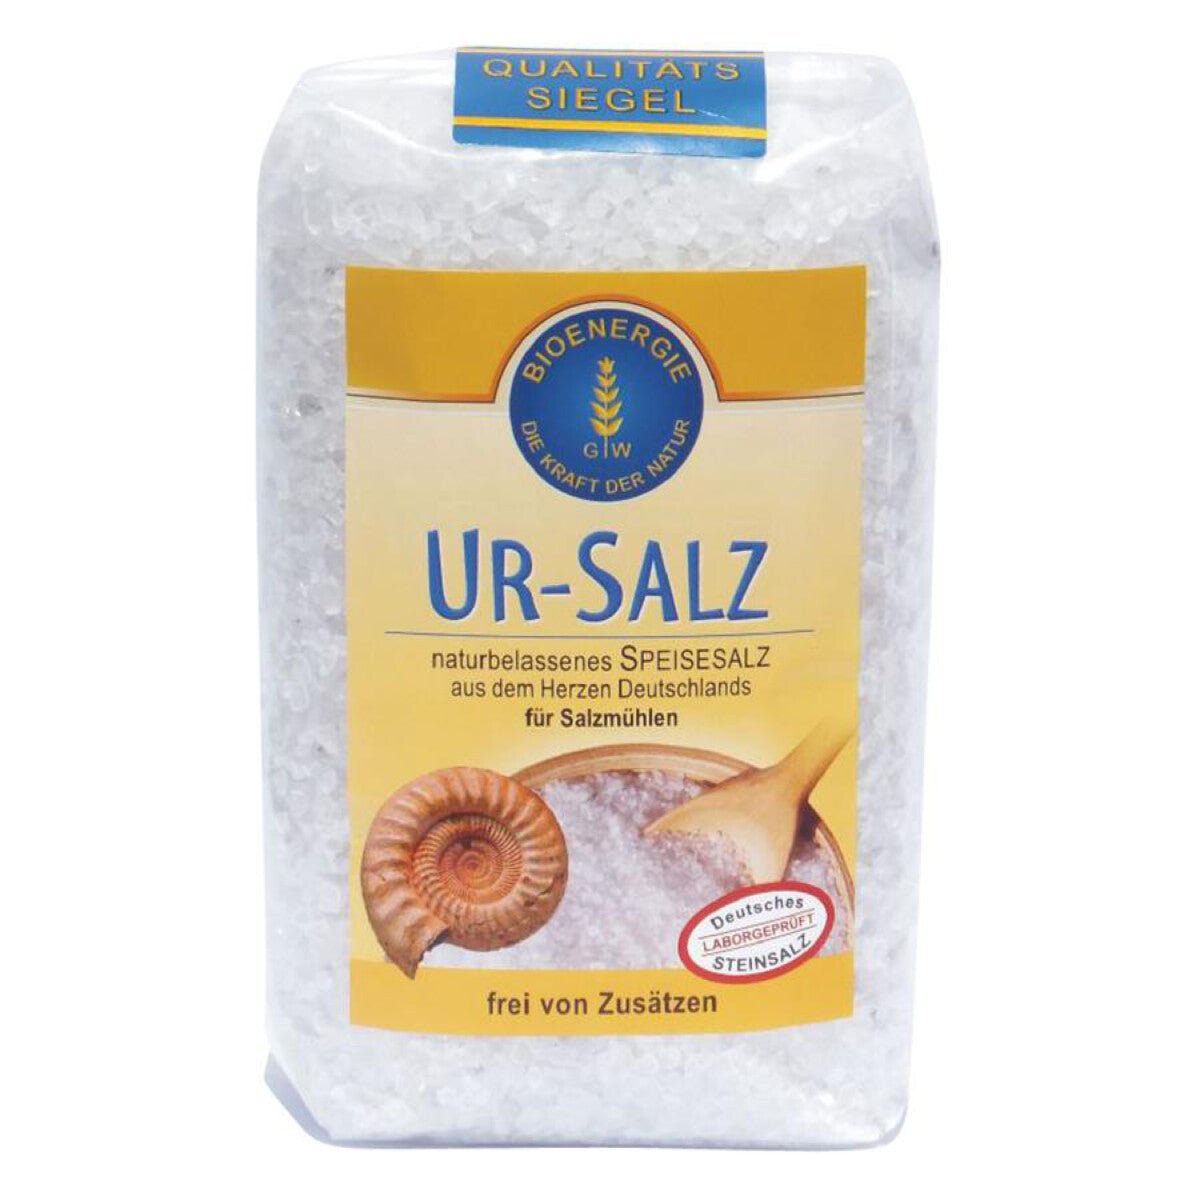 BIOENERGIE WAGNER Ur-Salz grob für Salzmühlen - 1 kg